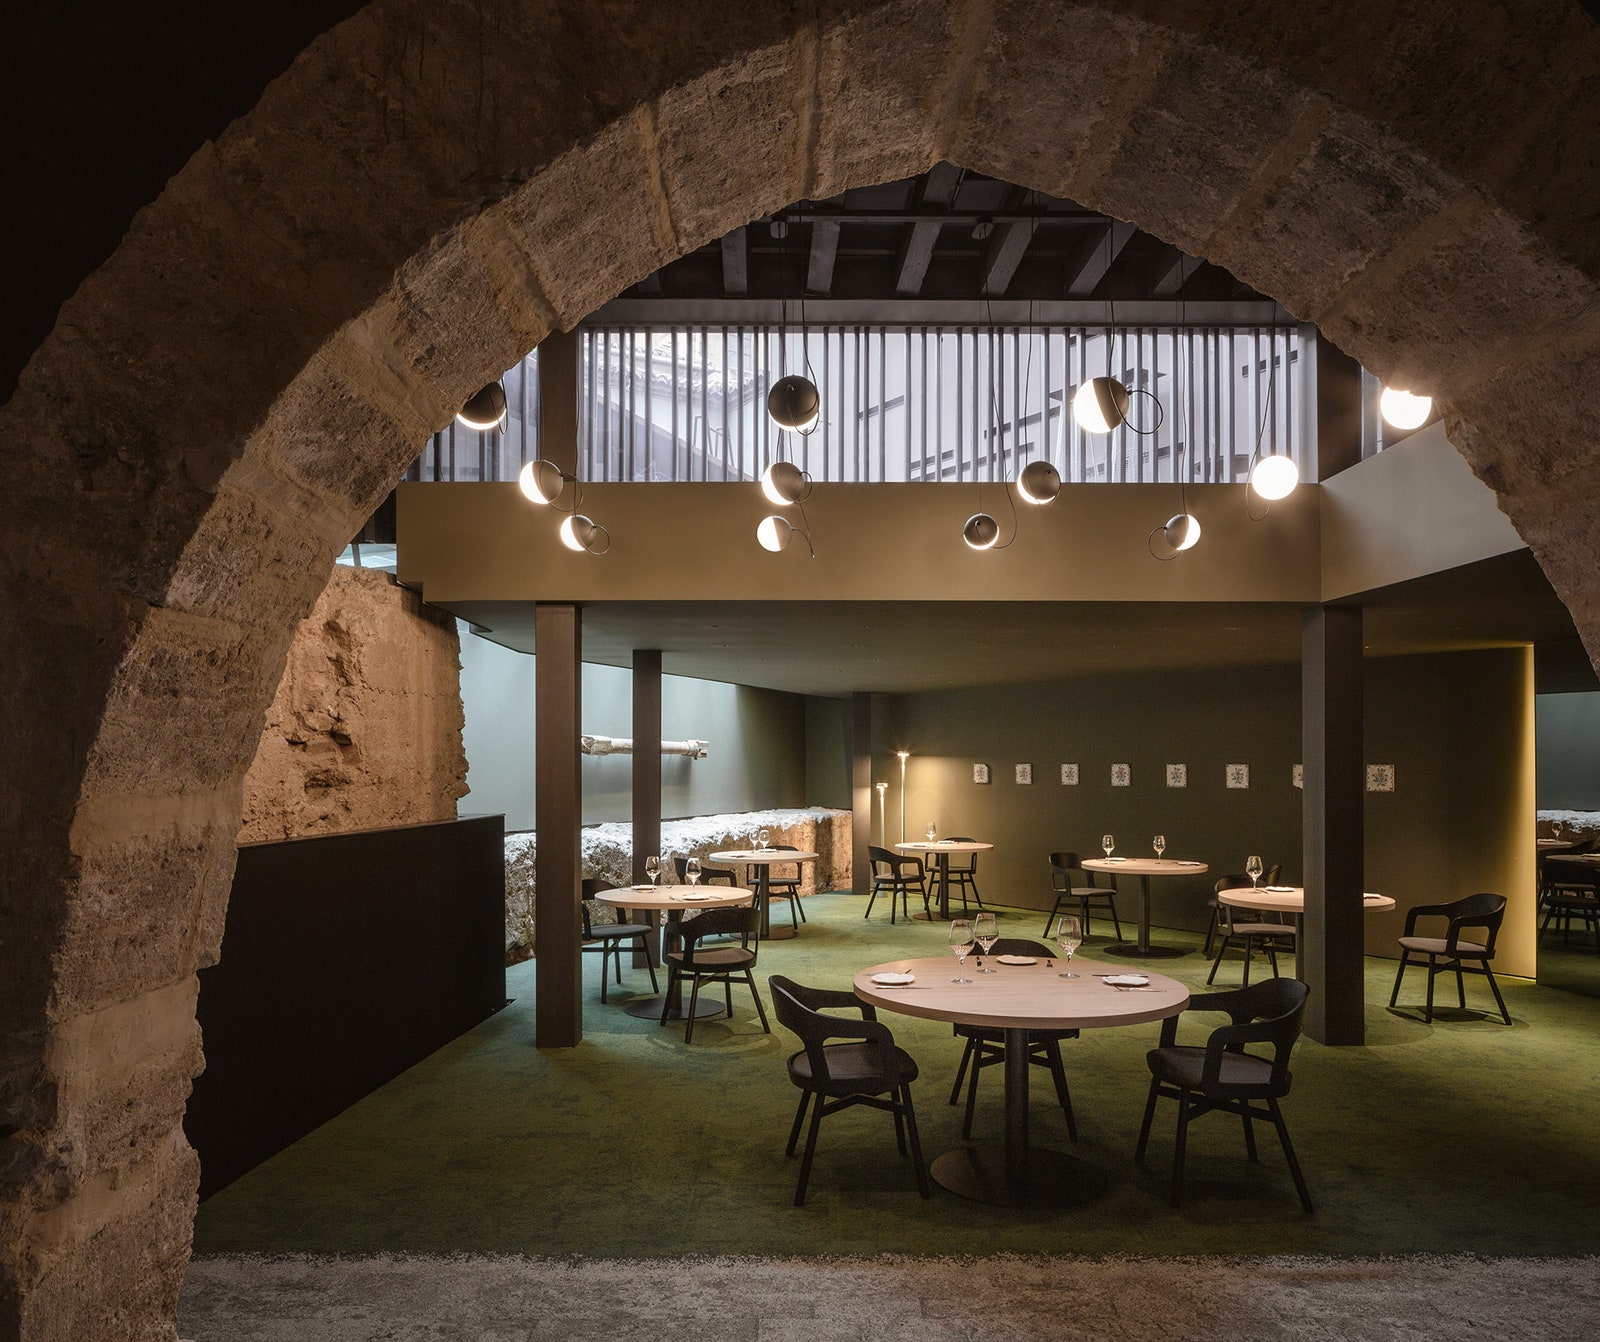 Ресторан с остатками средневековой стены в Валенсии